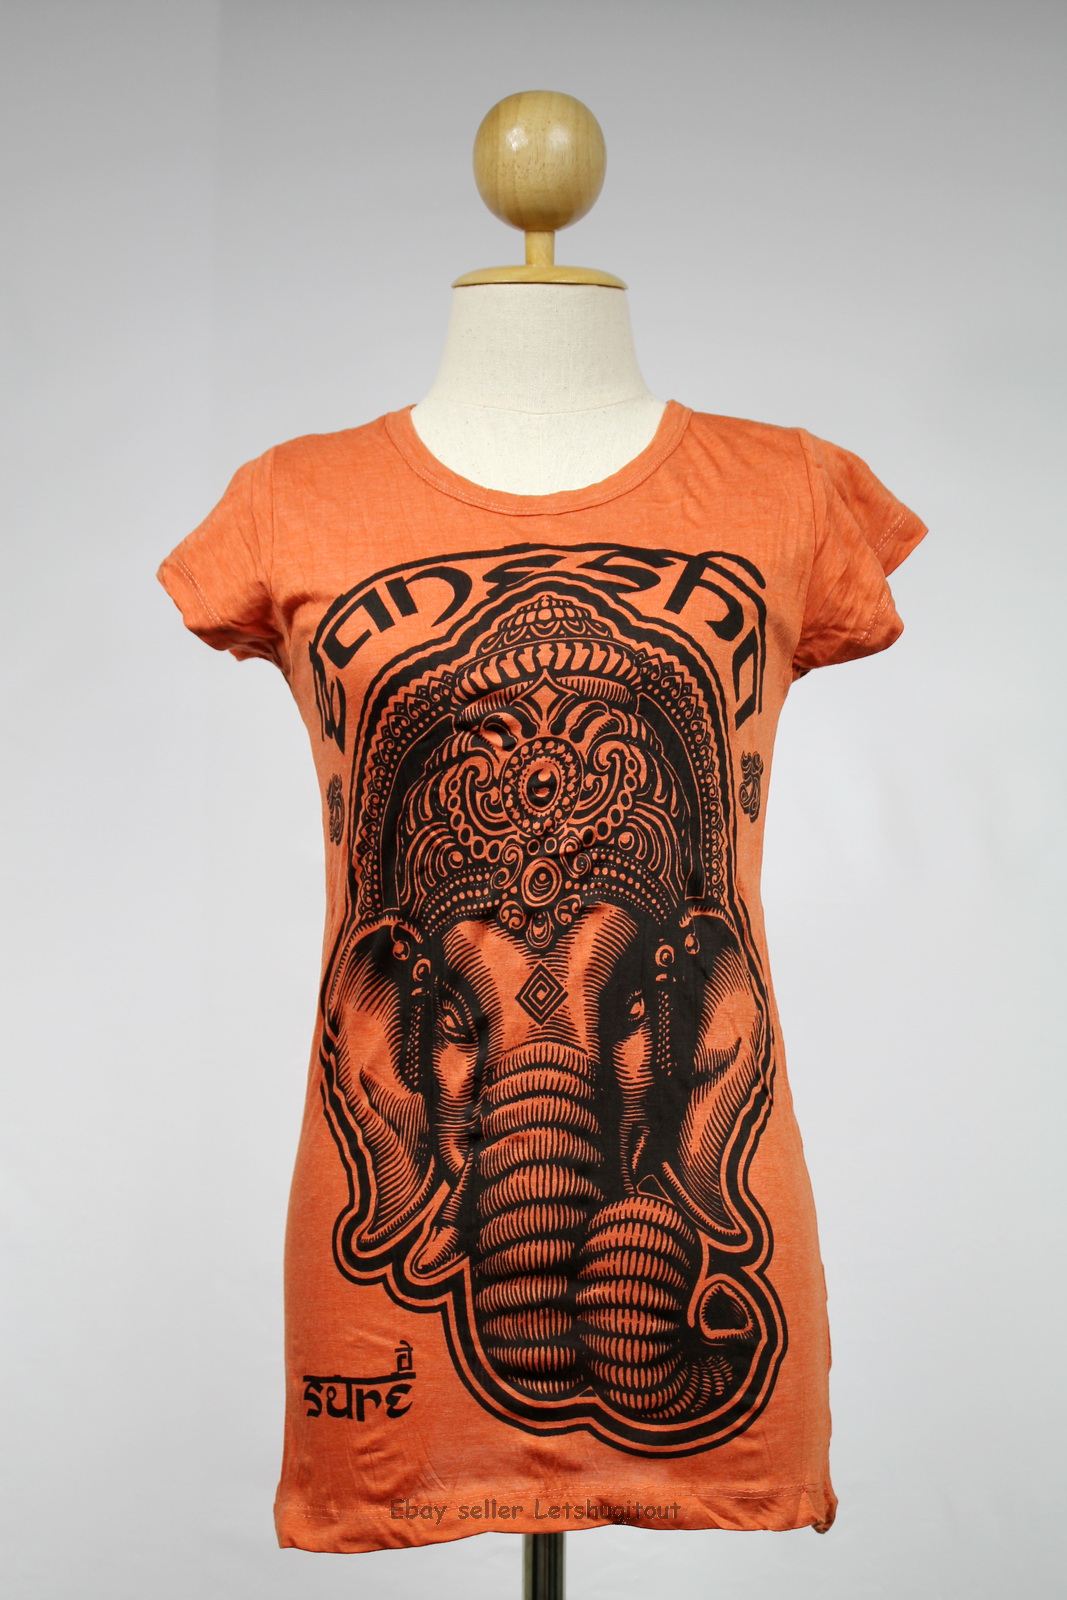 Ganesha T-shirt Hindu God Namaste Buddha Orange S M L Xl Elephant